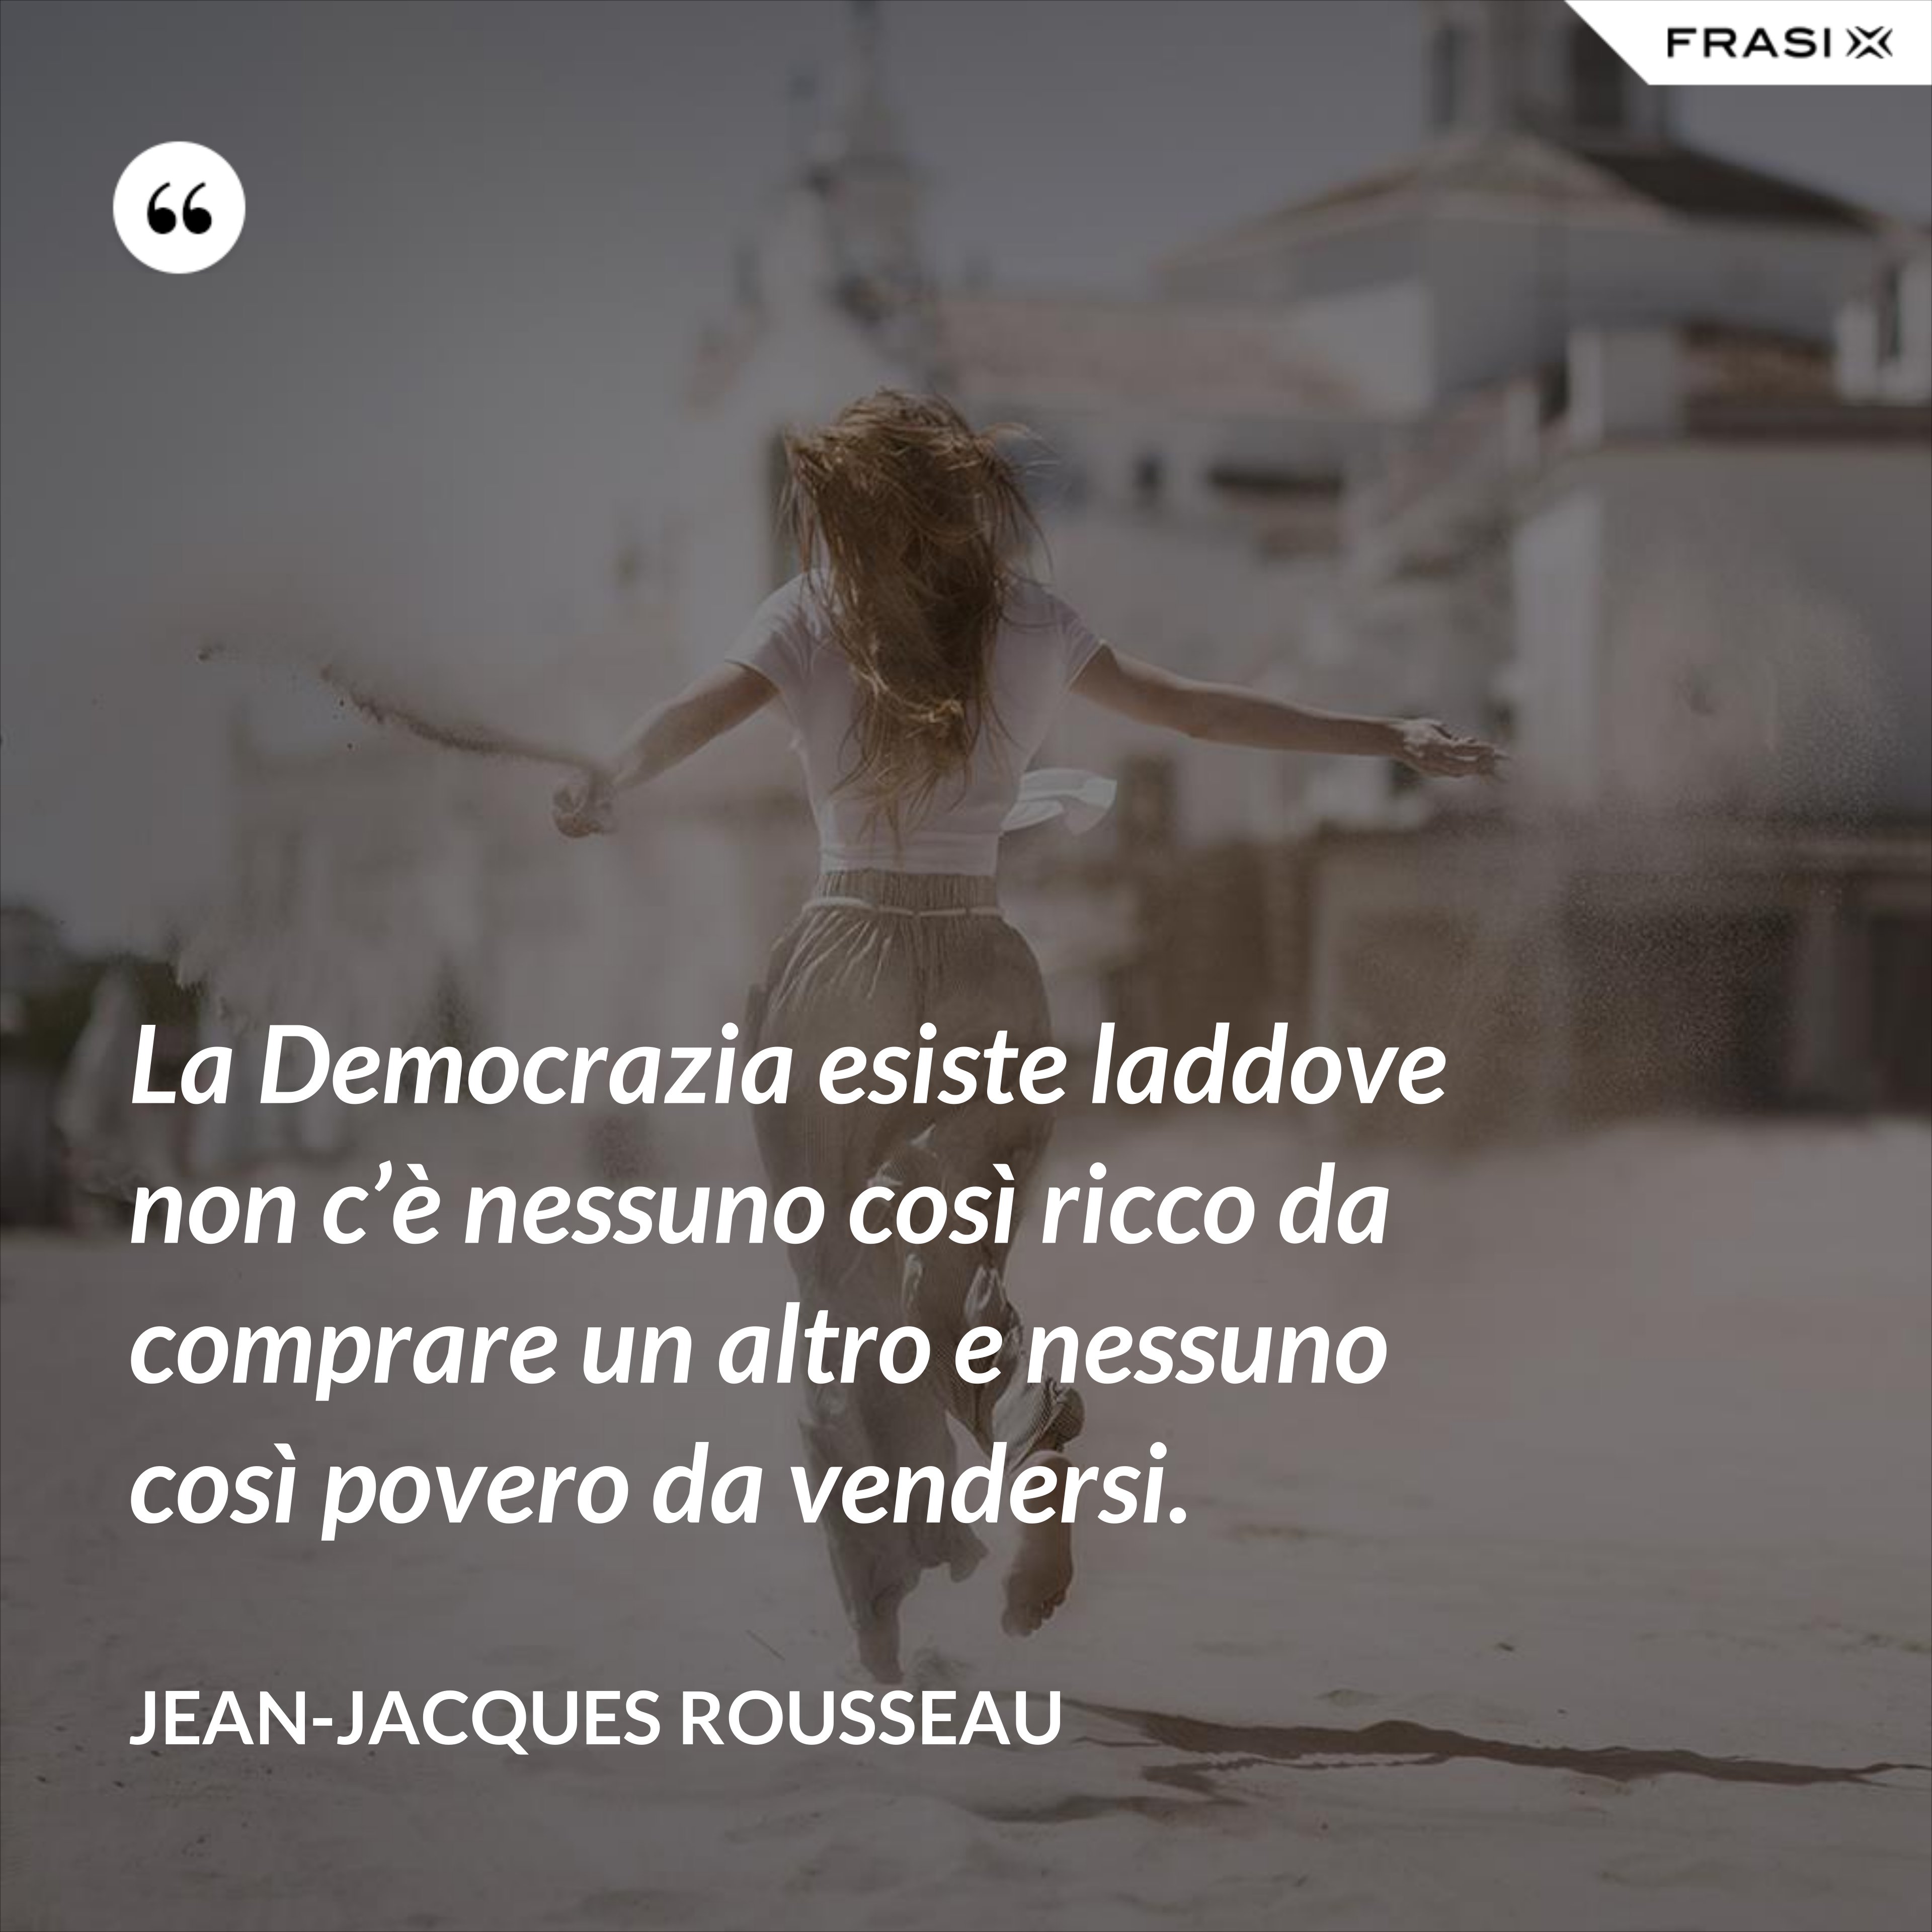 La Democrazia esiste laddove non c’è nessuno così ricco da comprare un altro e nessuno così povero da vendersi. - Jean-Jacques Rousseau